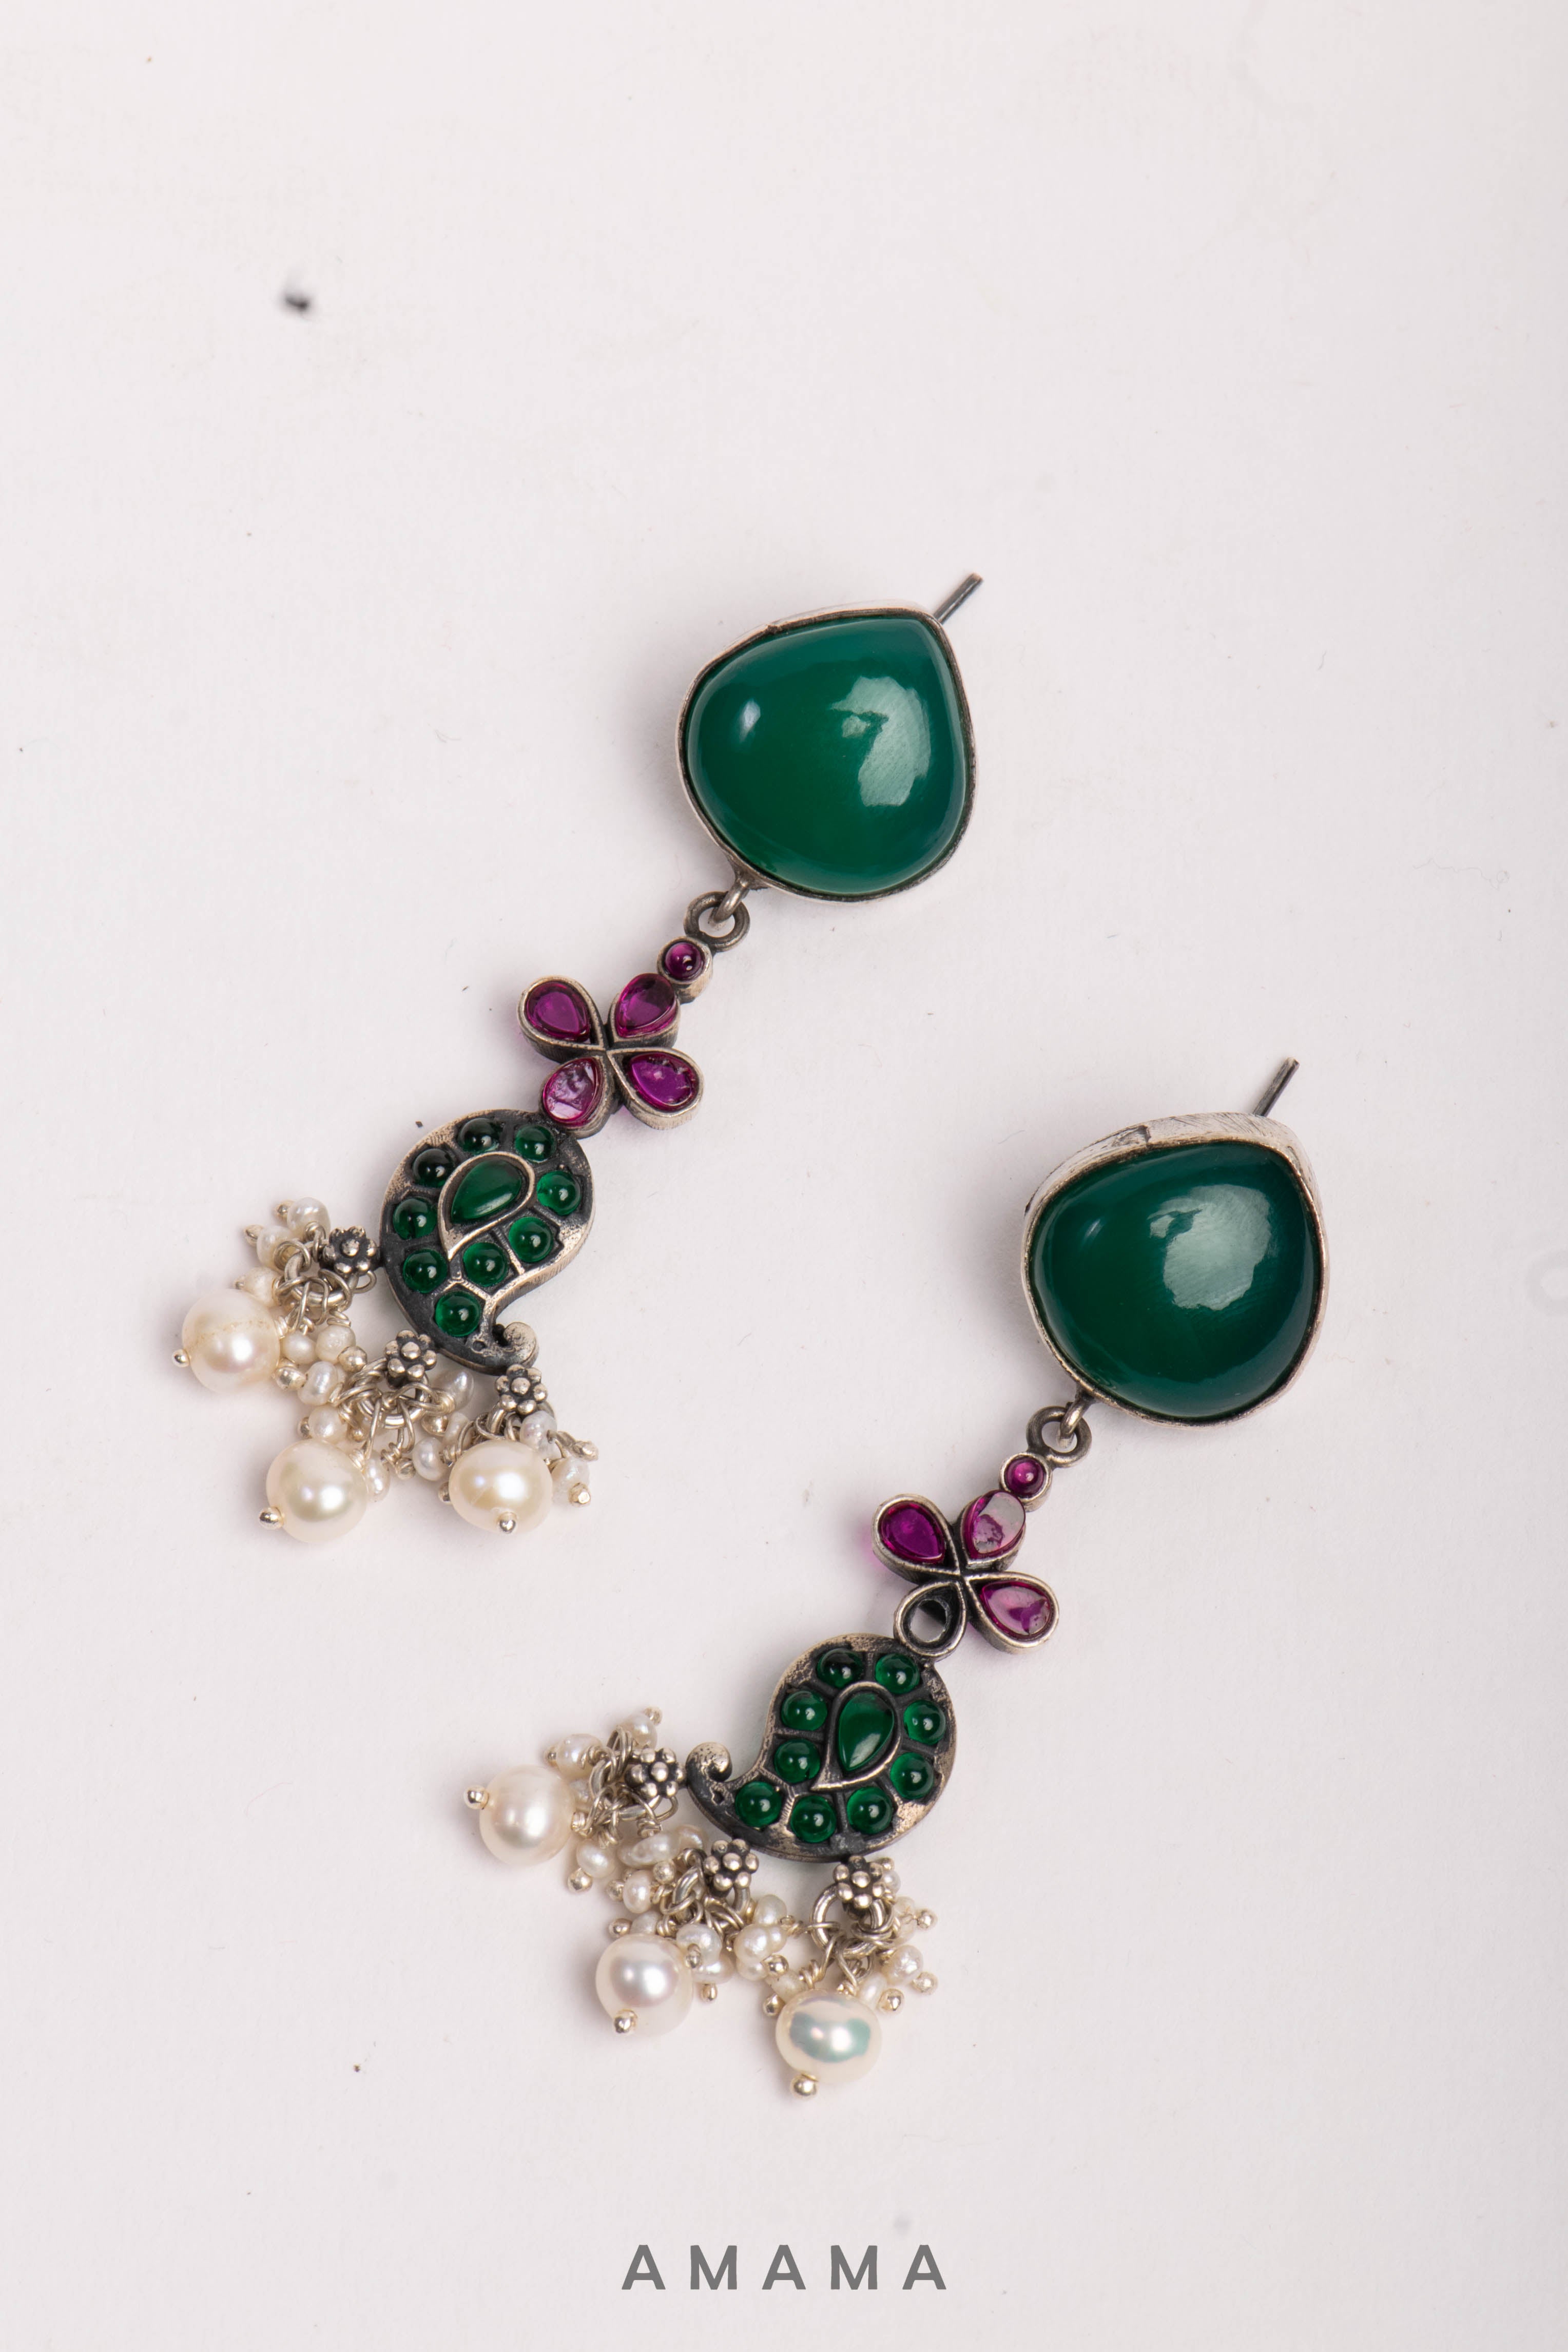 Amama,Nrityam Paisley Green Stone Silver Neckpiece & Earrings Set